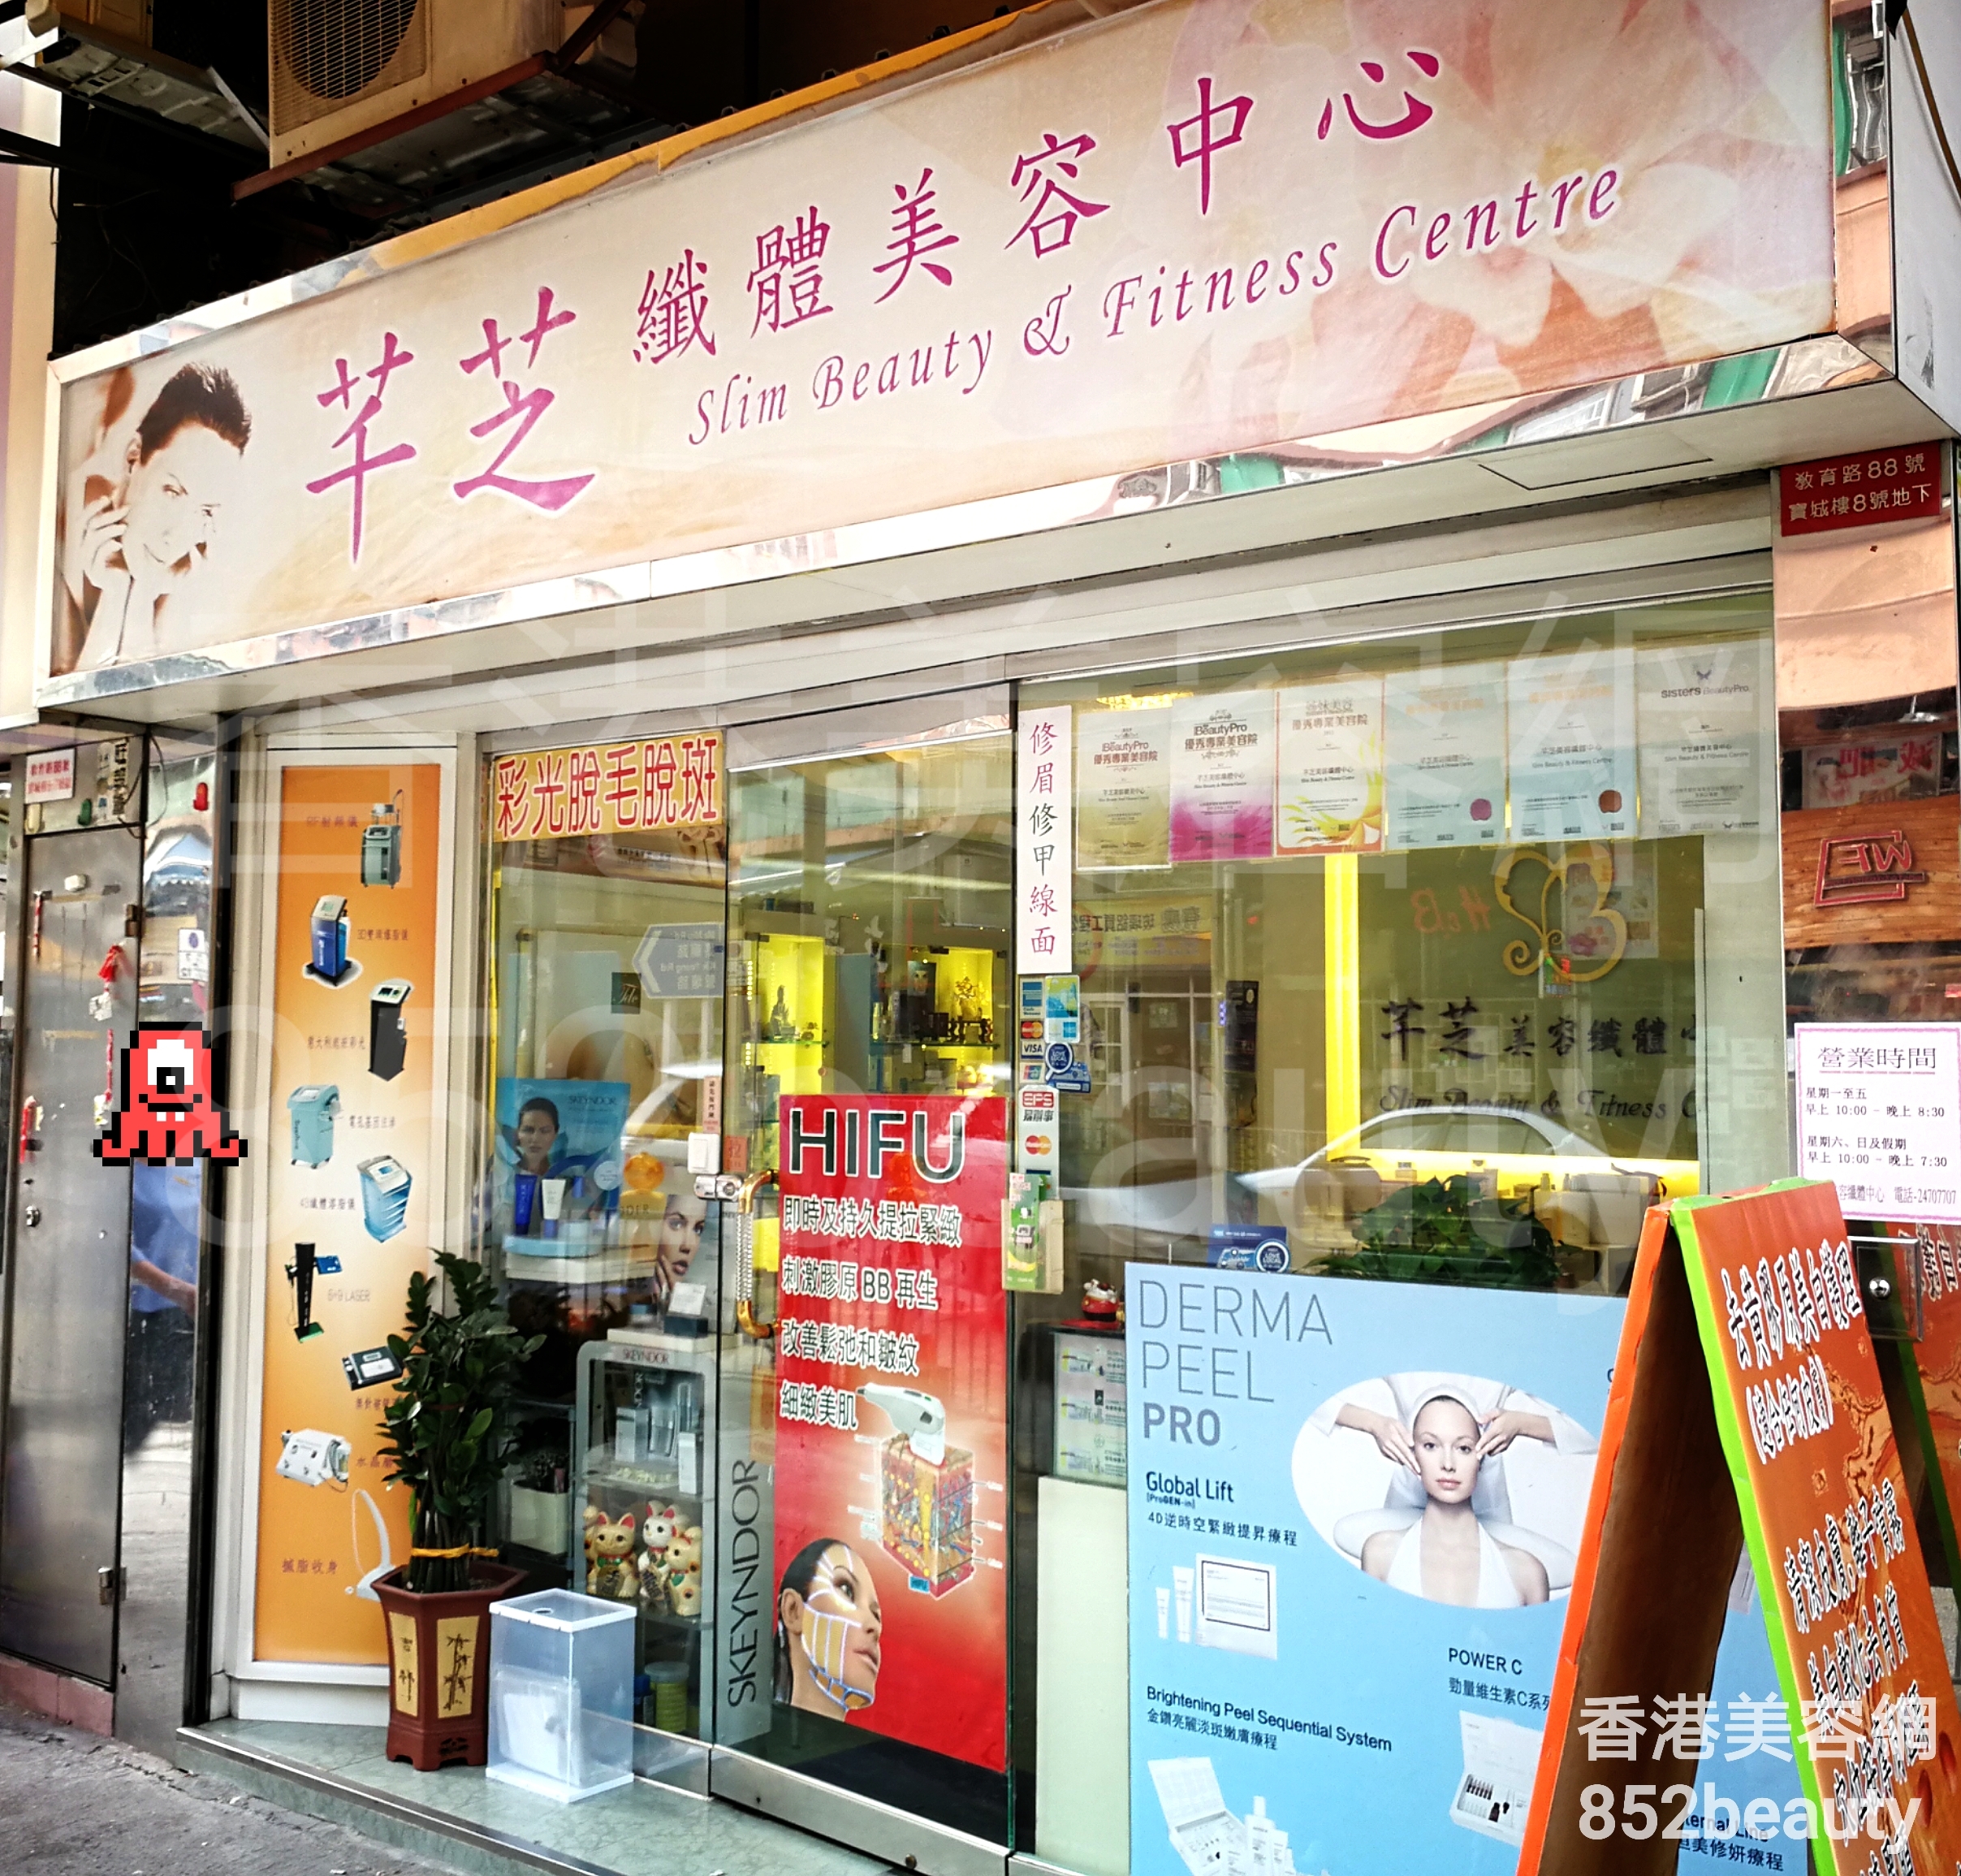 香港美容網 Hong Kong Beauty Salon 美容院 / 美容師: 芊芝 纖體美容中心